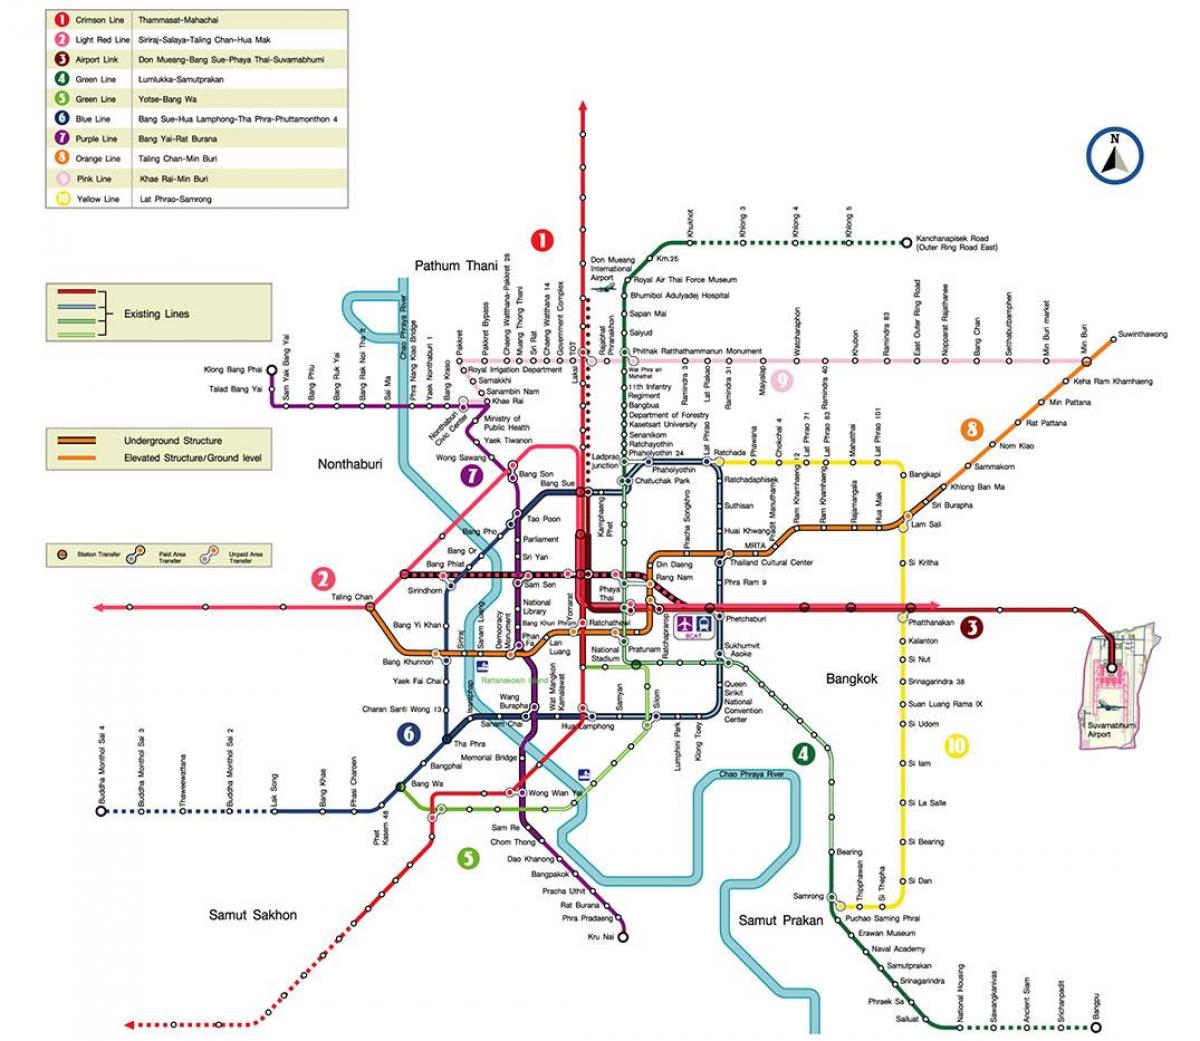 Bangkok ga tàu điện ngầm là trung tâm của hệ thống tàu điện ngầm Bangkok, cung cấp cho bạn sự thuận tiện trong việc qua lại giữa nhiều địa điểm trong thành phố. Đến ngay Bangkok ga tàu điện ngầm và khám phá thành phố này nhé!